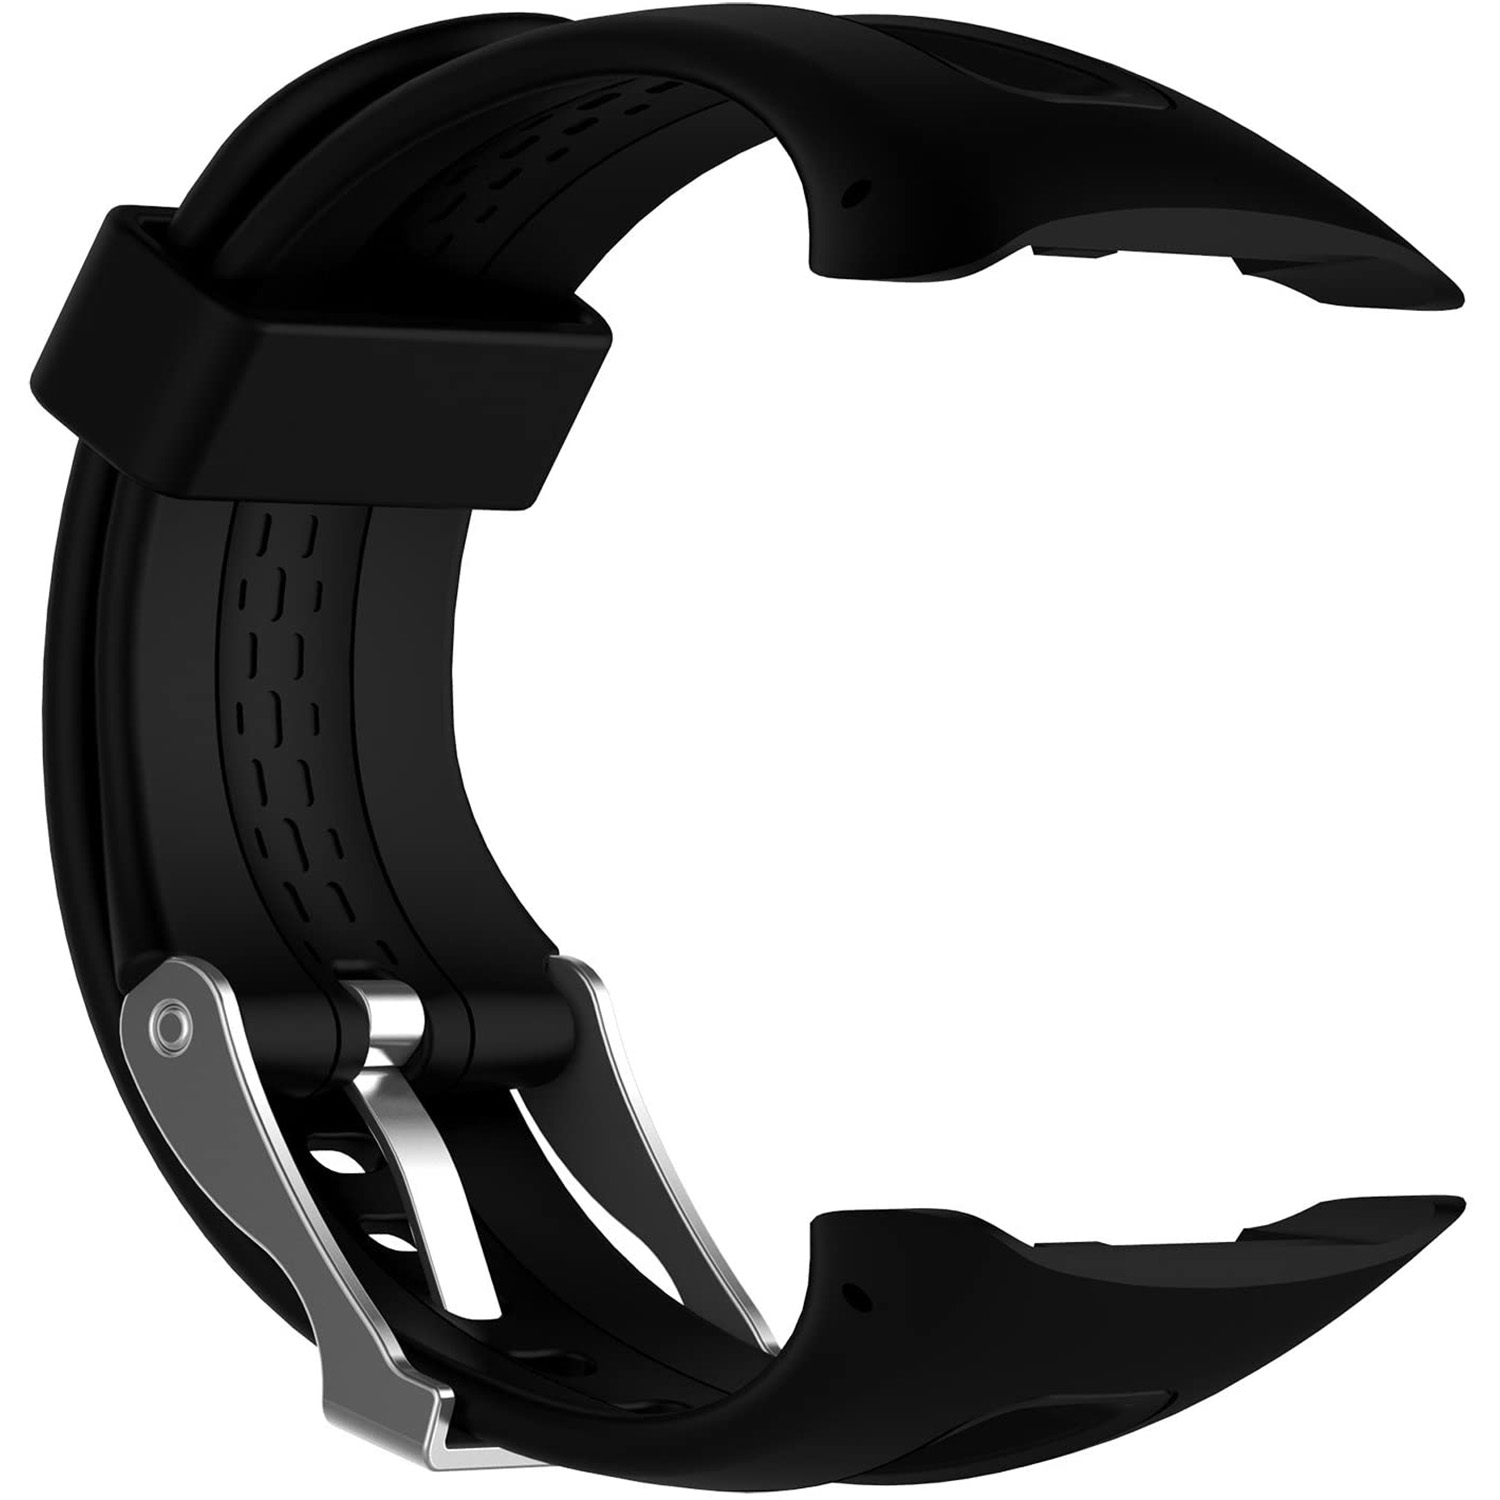 Patent Ødelægge Rejsende købmand Garmin Watch Accessories | MyWatchStore.co.za . Visit Us!